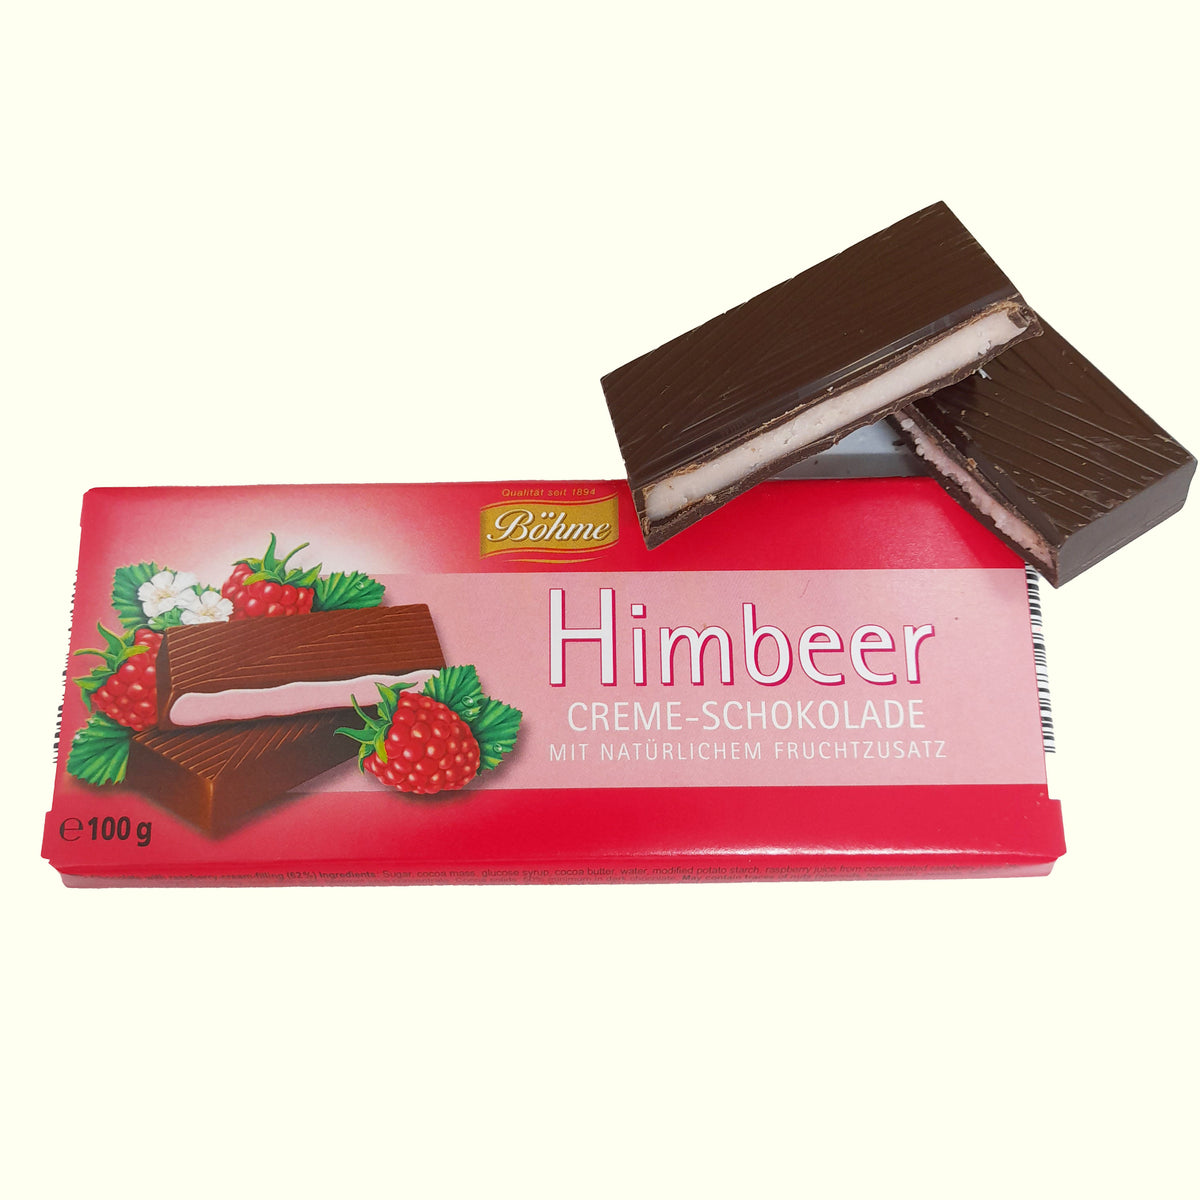 Böhme Himbeer Creme- Schokolade 100g